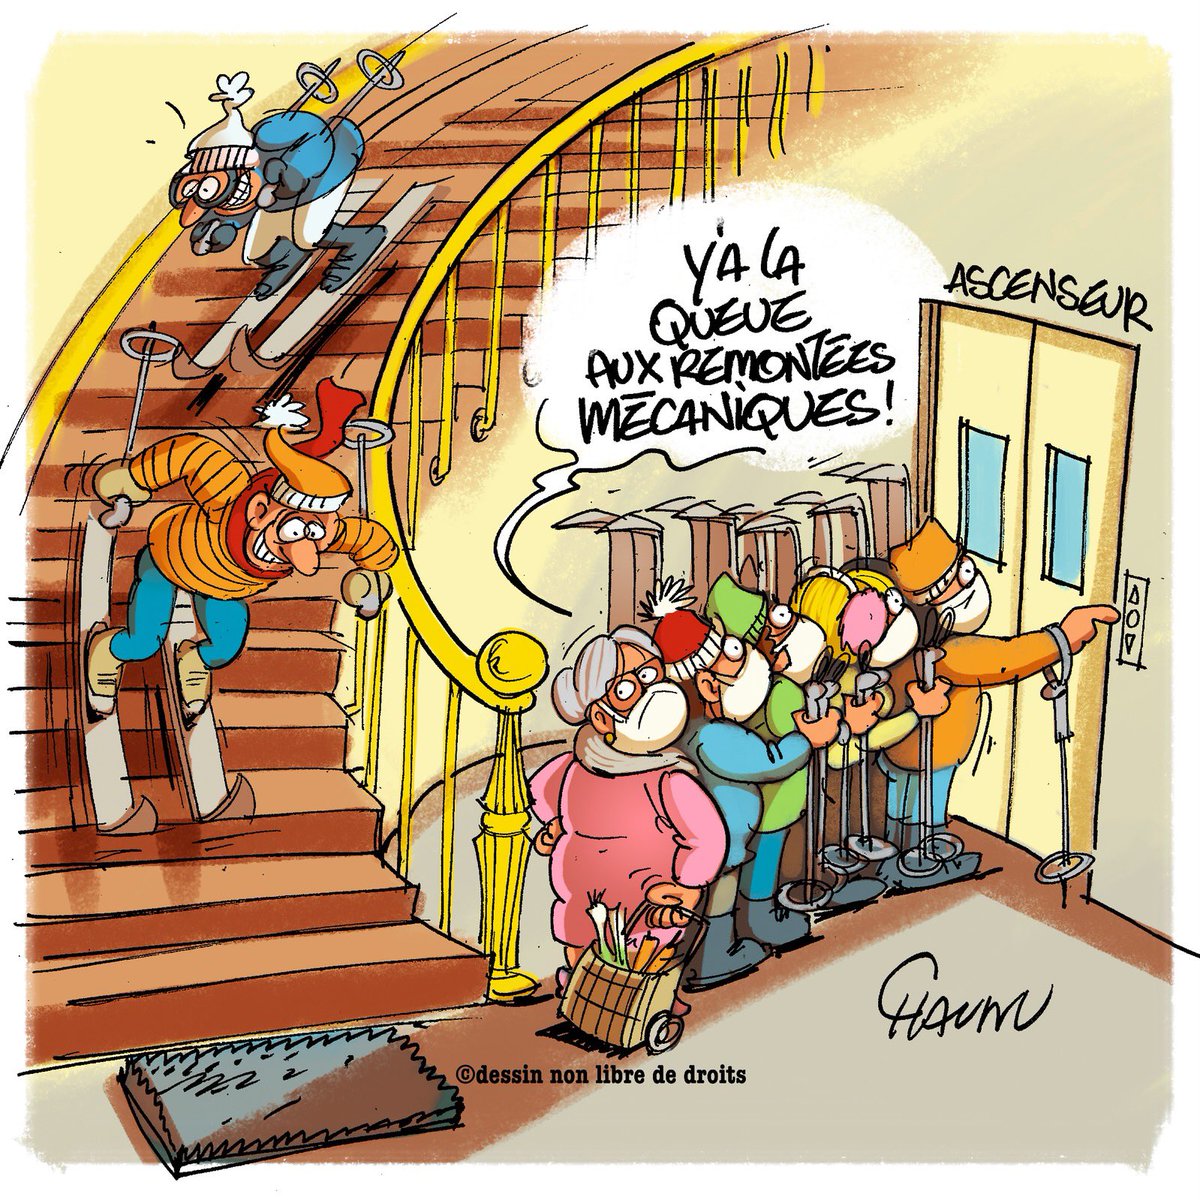 Publié aujourd’hui dans @UnionArdennais #VacancesdeFevrier #ski #actualite #dessindepresse